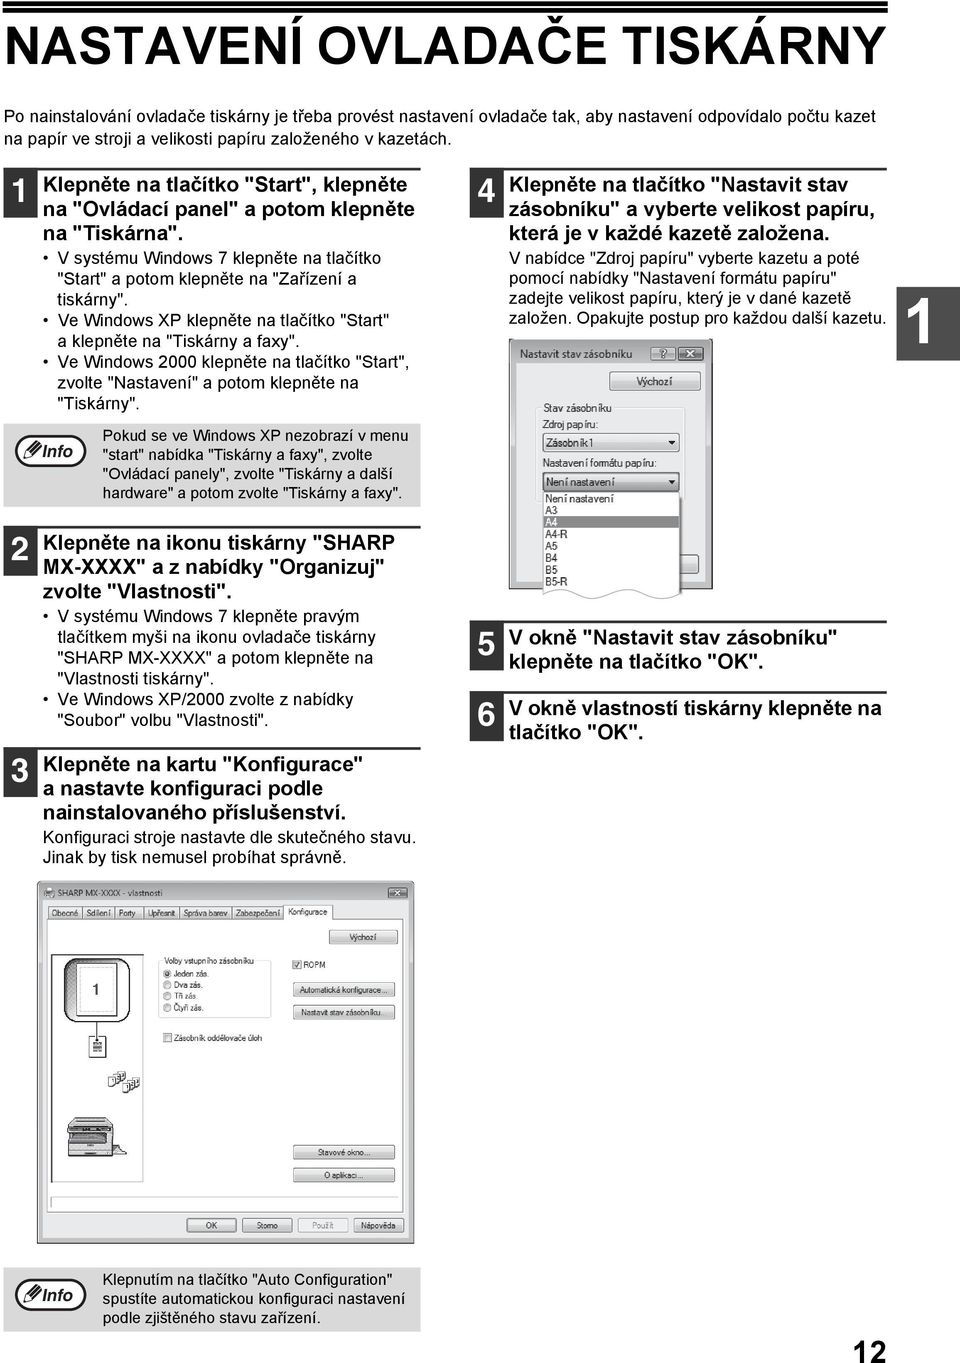 Ve Windows XP klepněte na tlačítko "Start" a klepněte na "Tiskárny a faxy". Ve Windows 000 klepněte na tlačítko "Start", zvolte "Nastavení" a potom klepněte na "Tiskárny".